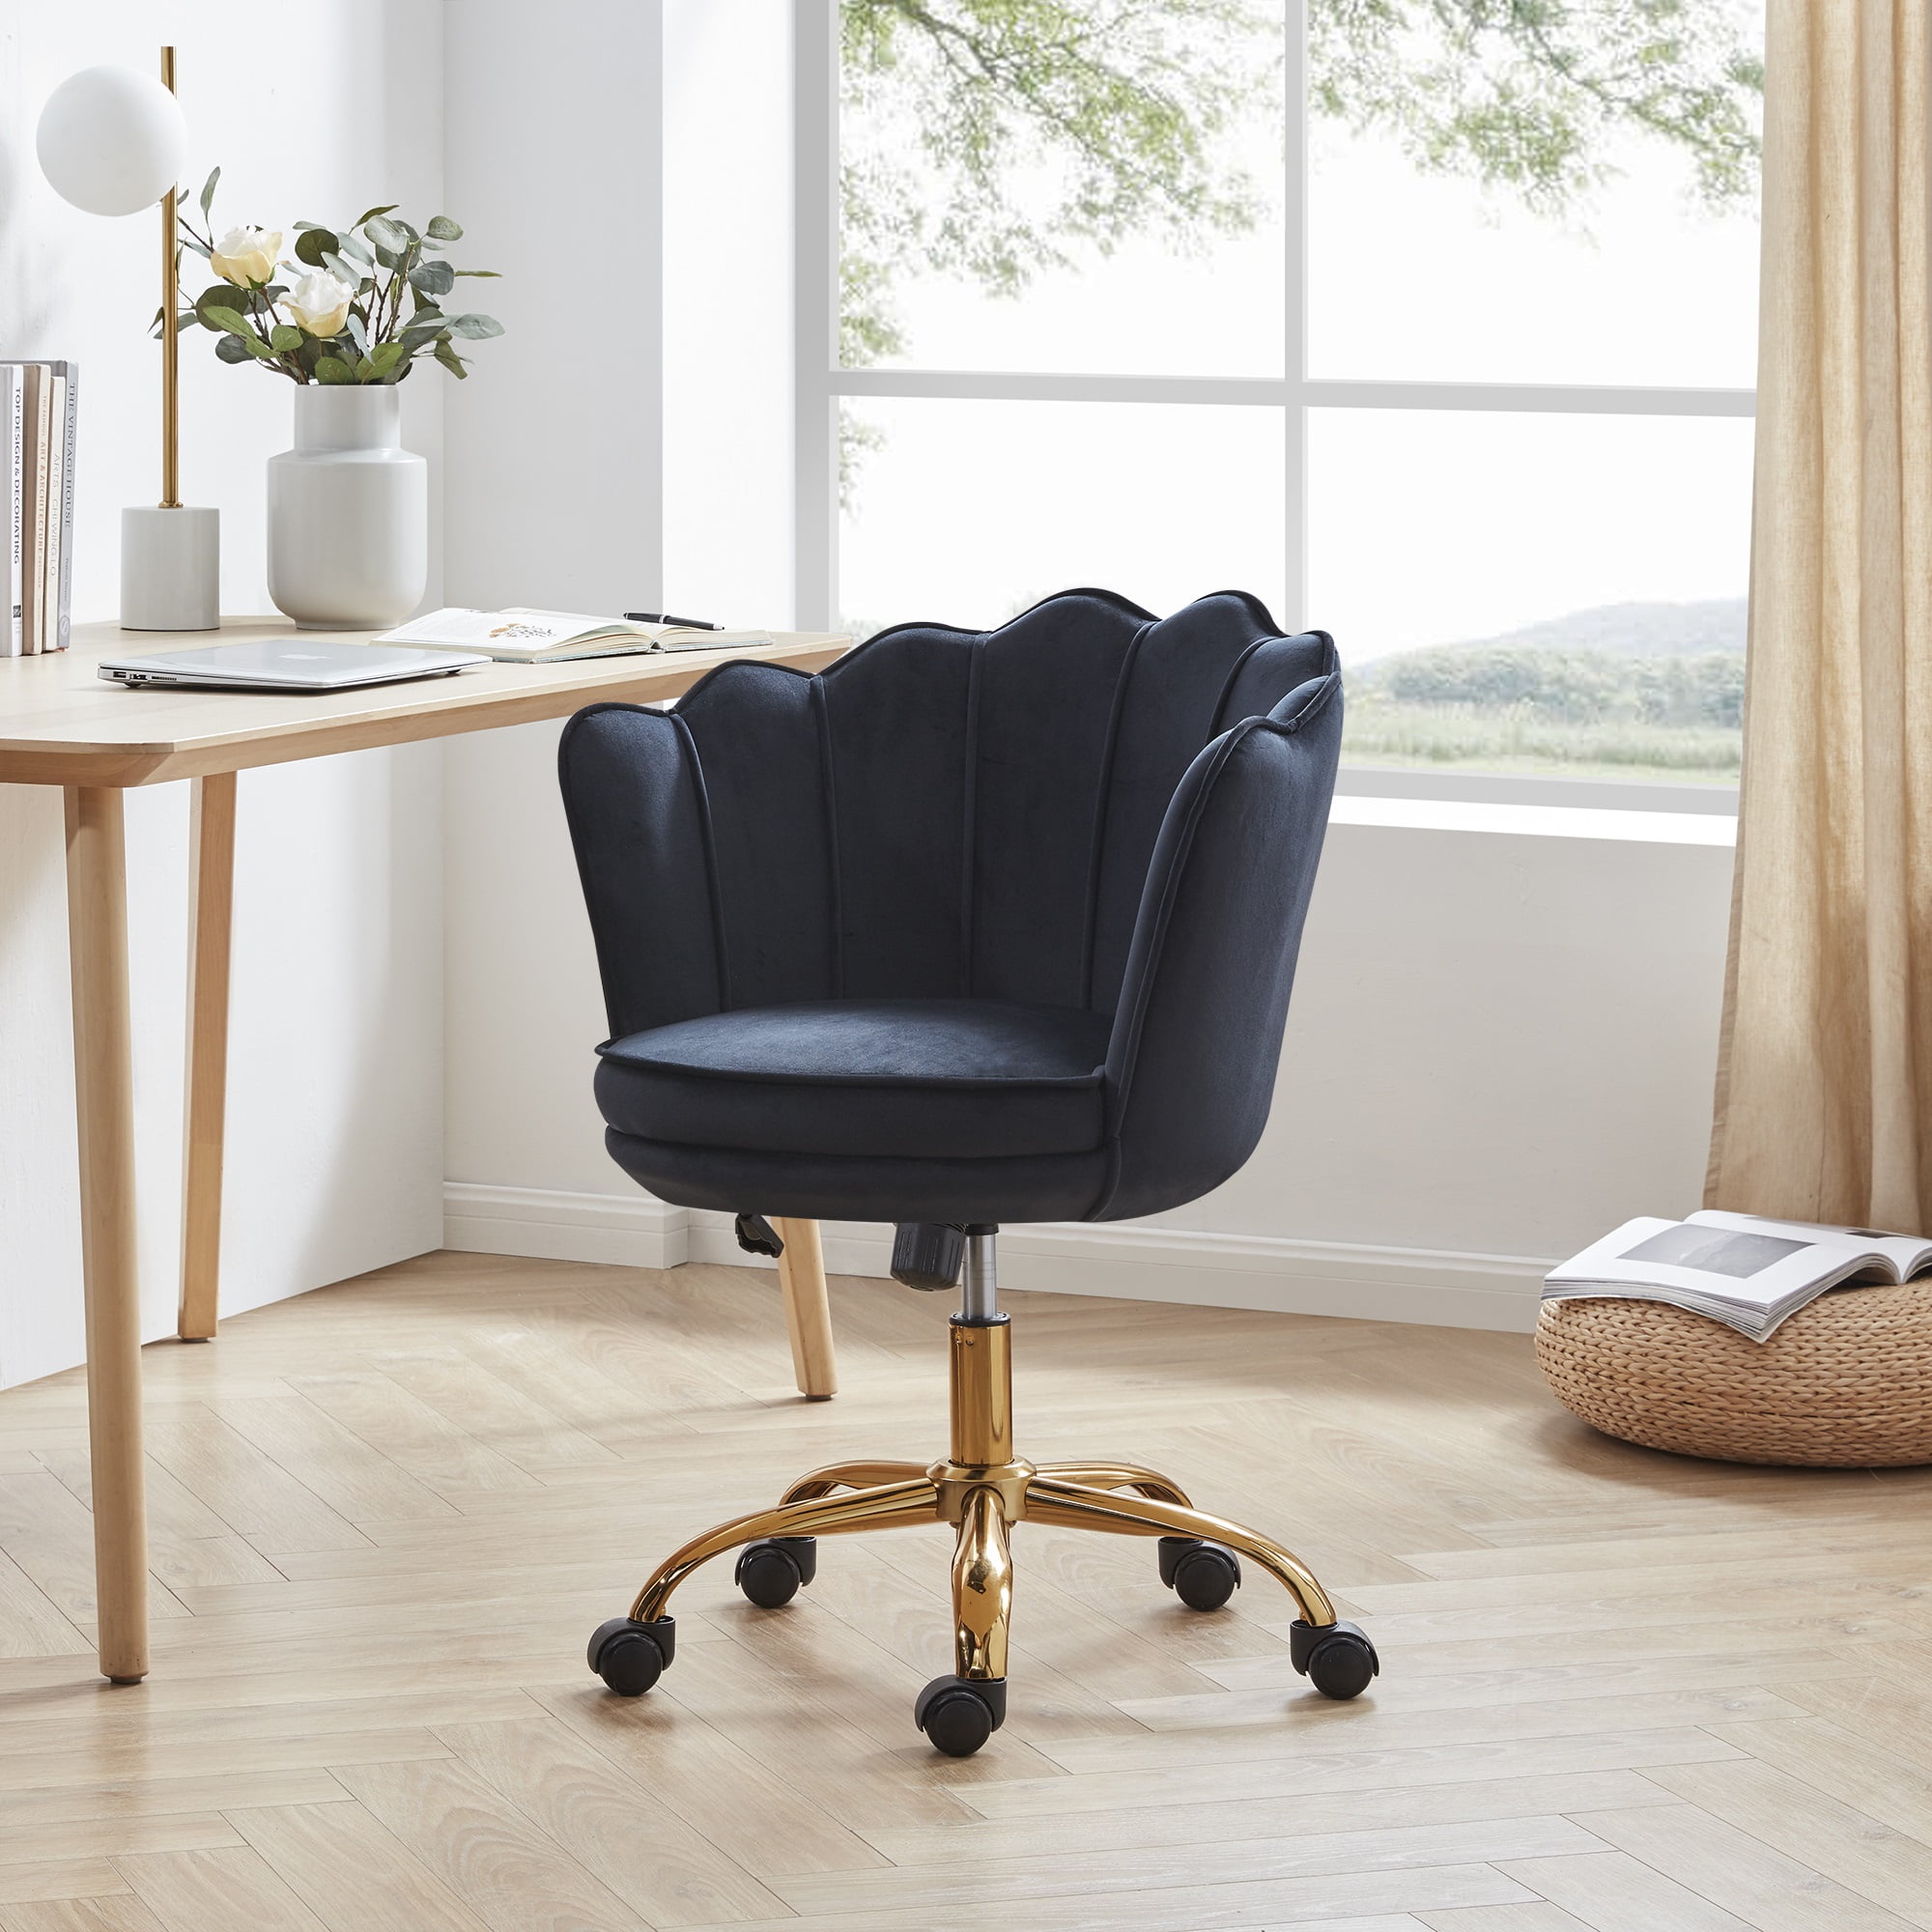 BELLEZE Kaylee Office Chair Upholstered Velvet Seashell Swivel Desk Chair Task Chair Height Adjustable Golden Leg, Black